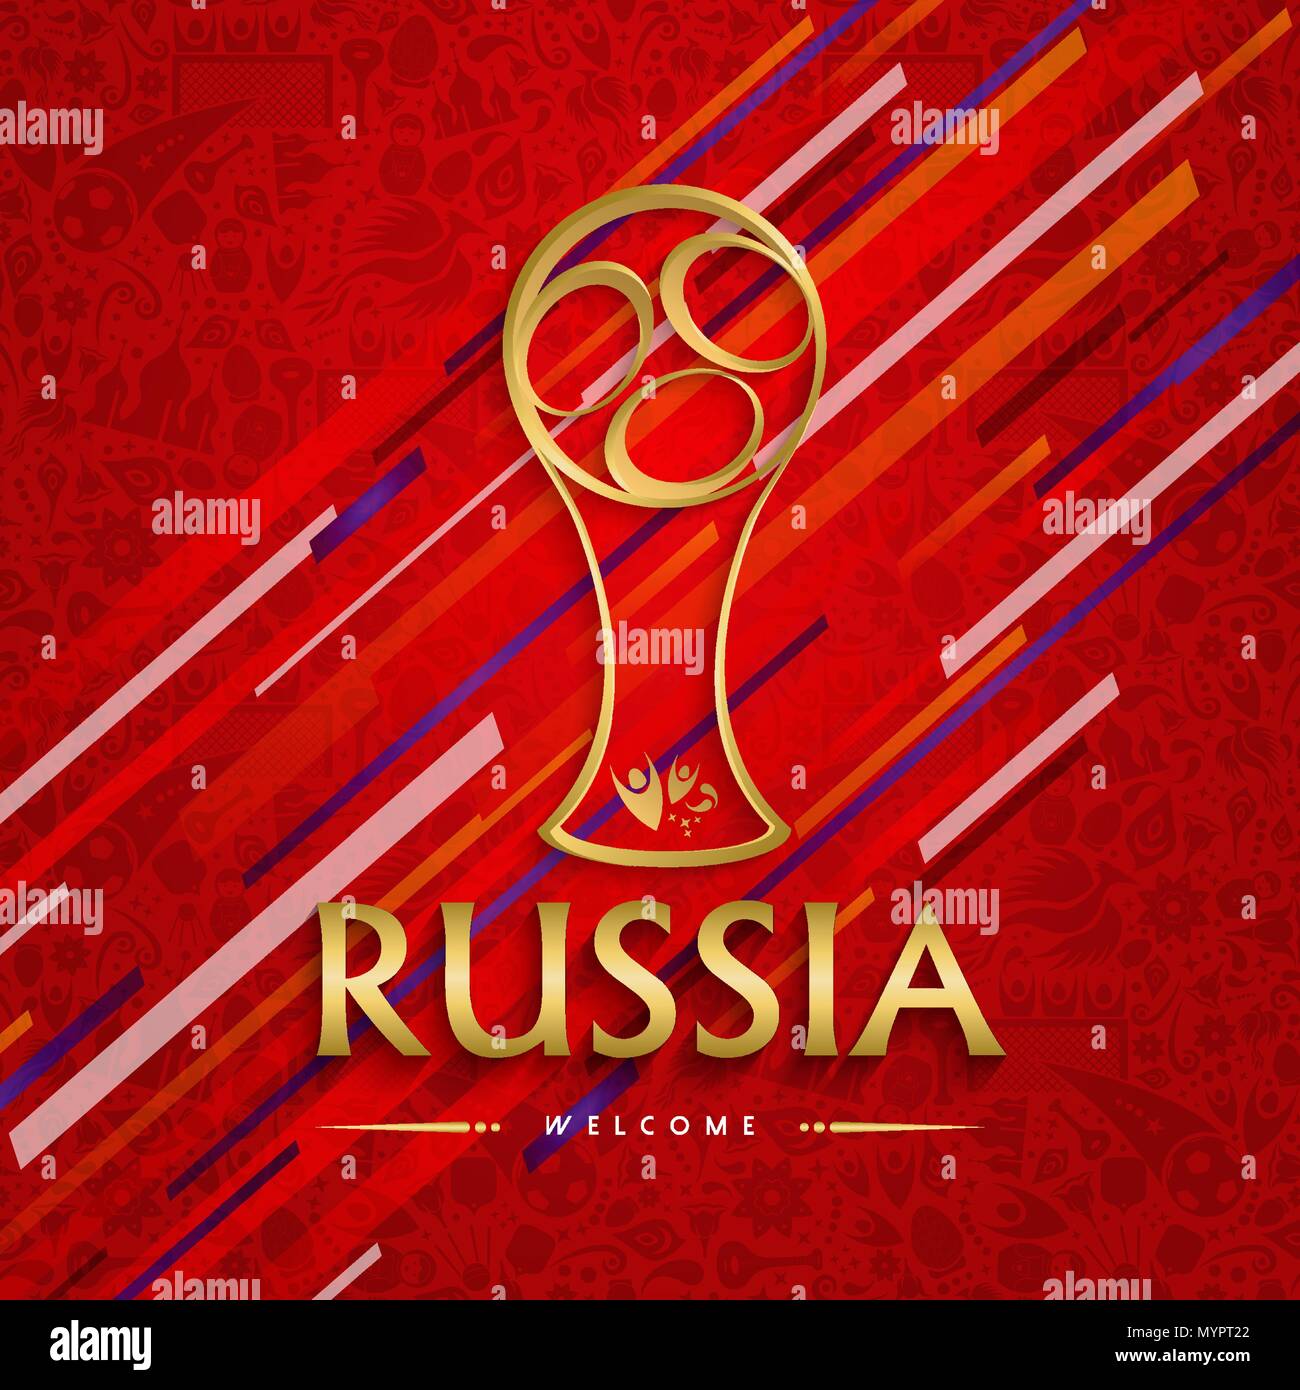 Fußball-Award für besondere Fußballspiel. Russland Text zitieren und gold Abbildung mit festlichen Farbe Hintergrund. EPS 10 Vektor. Stock Vektor